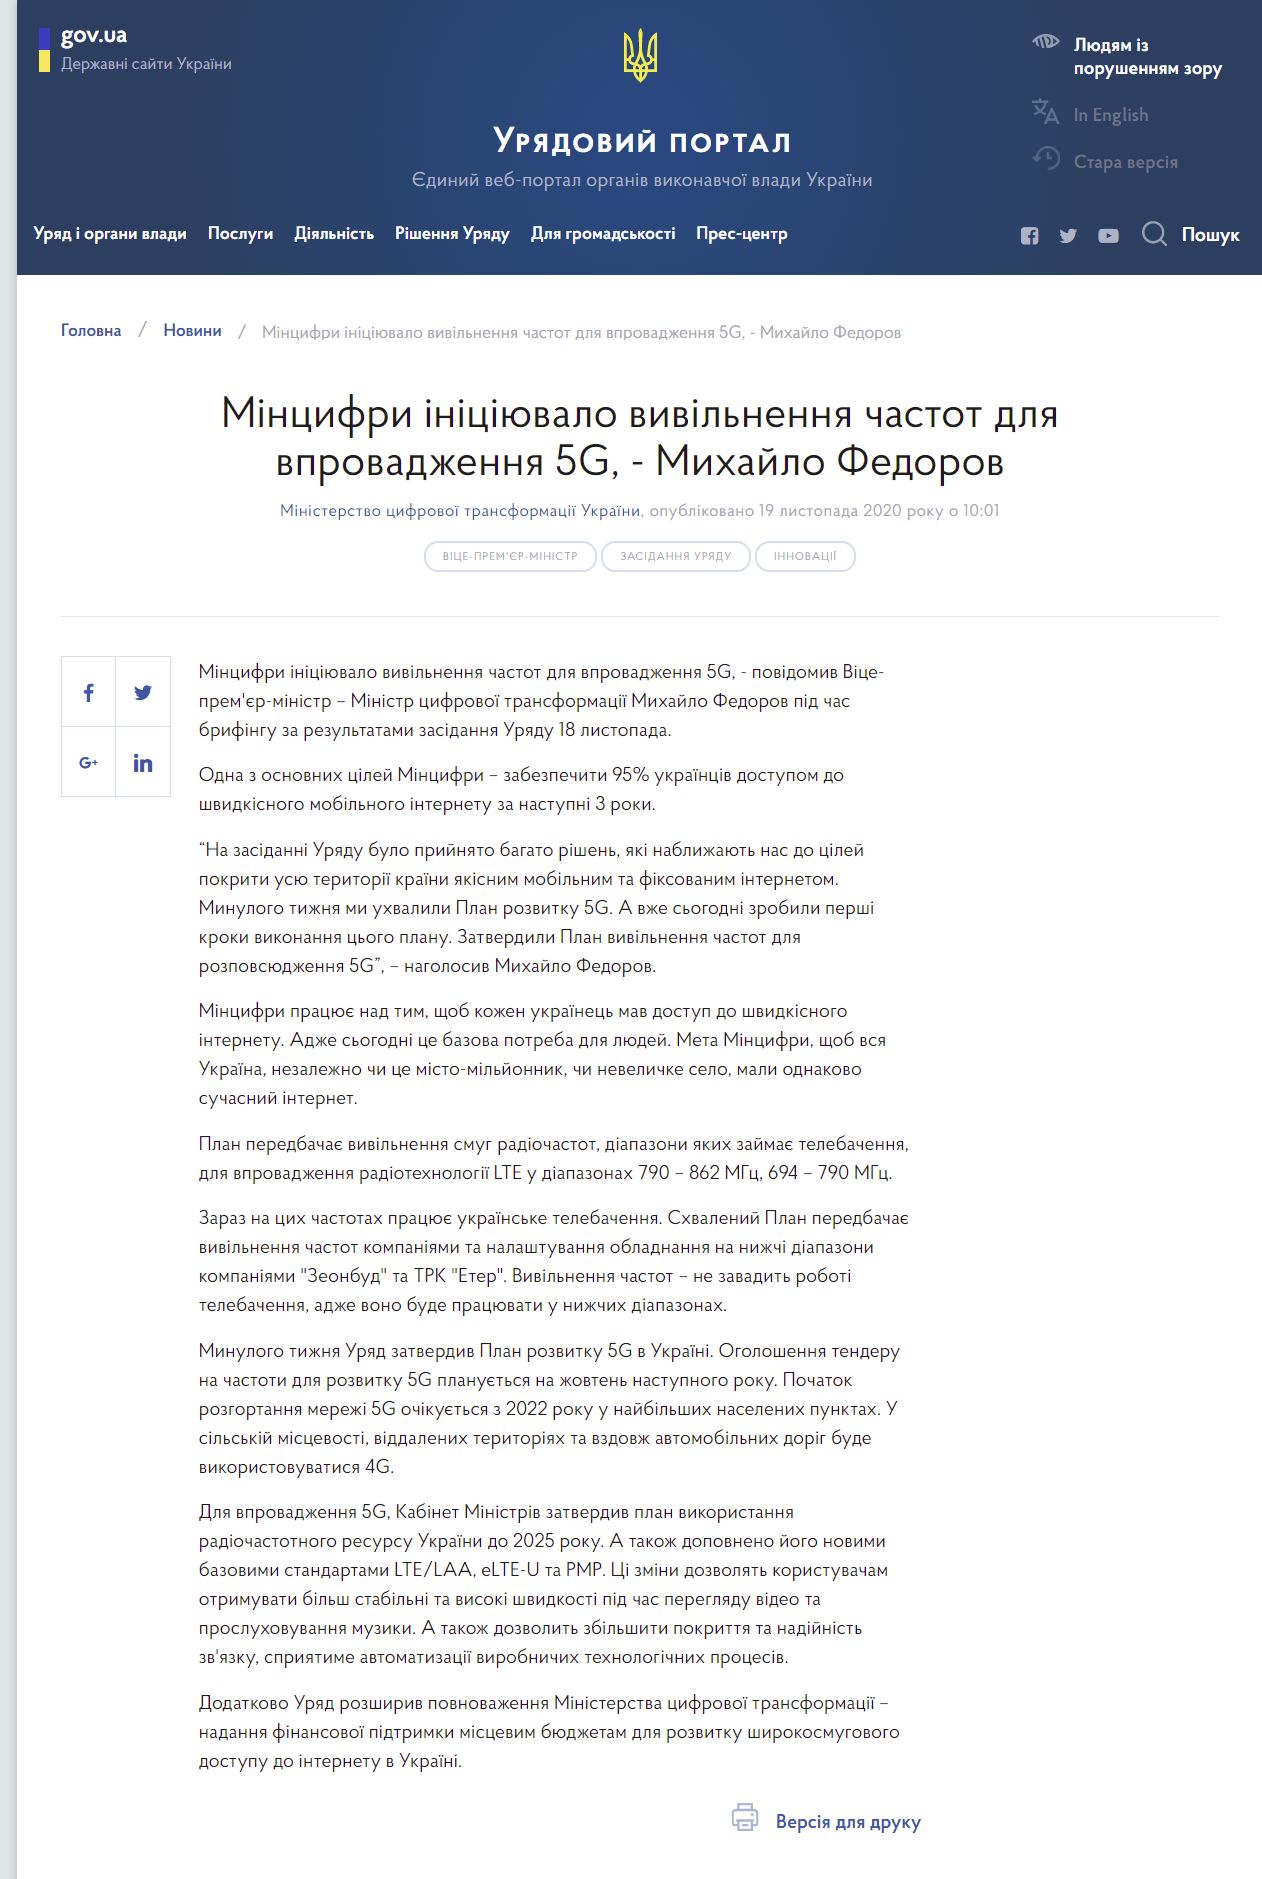 https://www.kmu.gov.ua/news/mincifri-iniciyuvalo-vivilnennya-chastot-dlya-vprovadzhennya-5g-mihajlo-fedorov